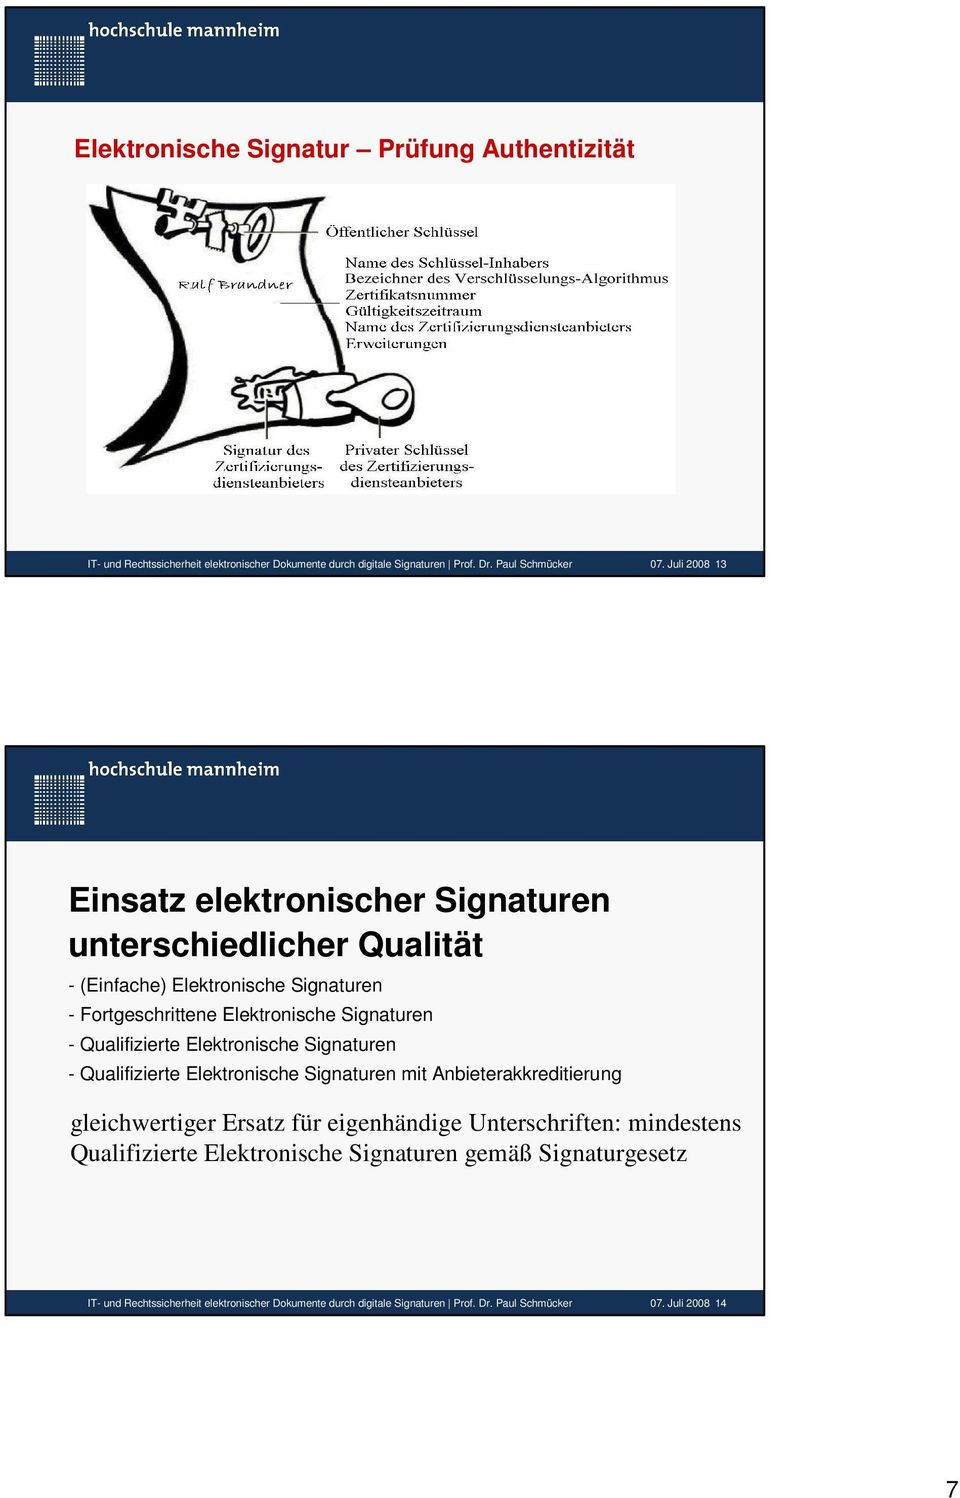 Qualifizierte Elektronische Signaturen - Qualifizierte Elektronische Signaturen mit Anbieterakkreditierung gleichwertiger Ersatz für eigenhändige Unterschriften: